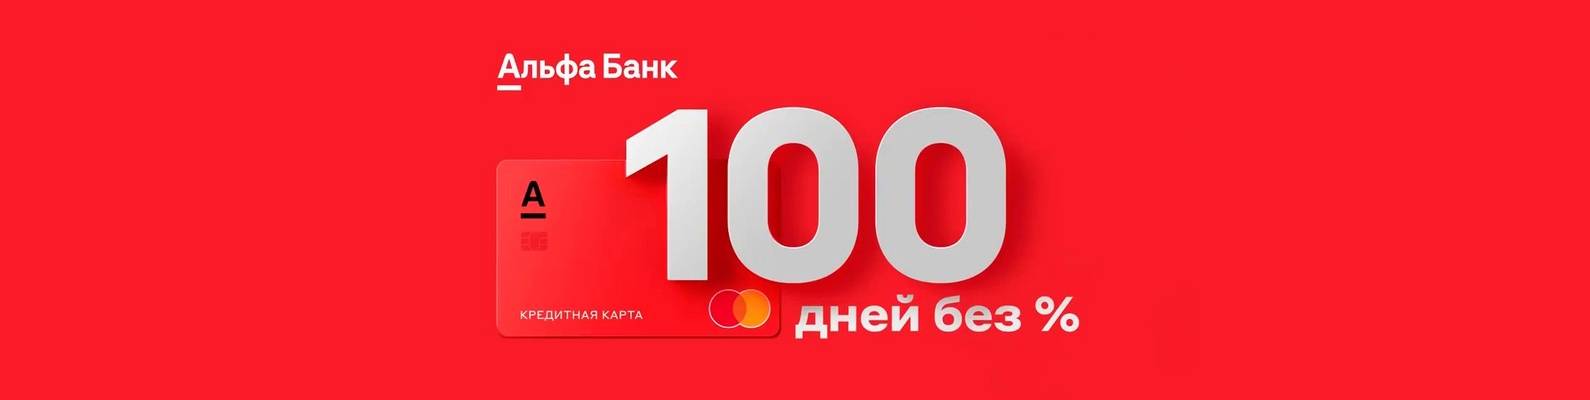 Правда о карте альфа банка 100 дней без процентов и условиях кредита